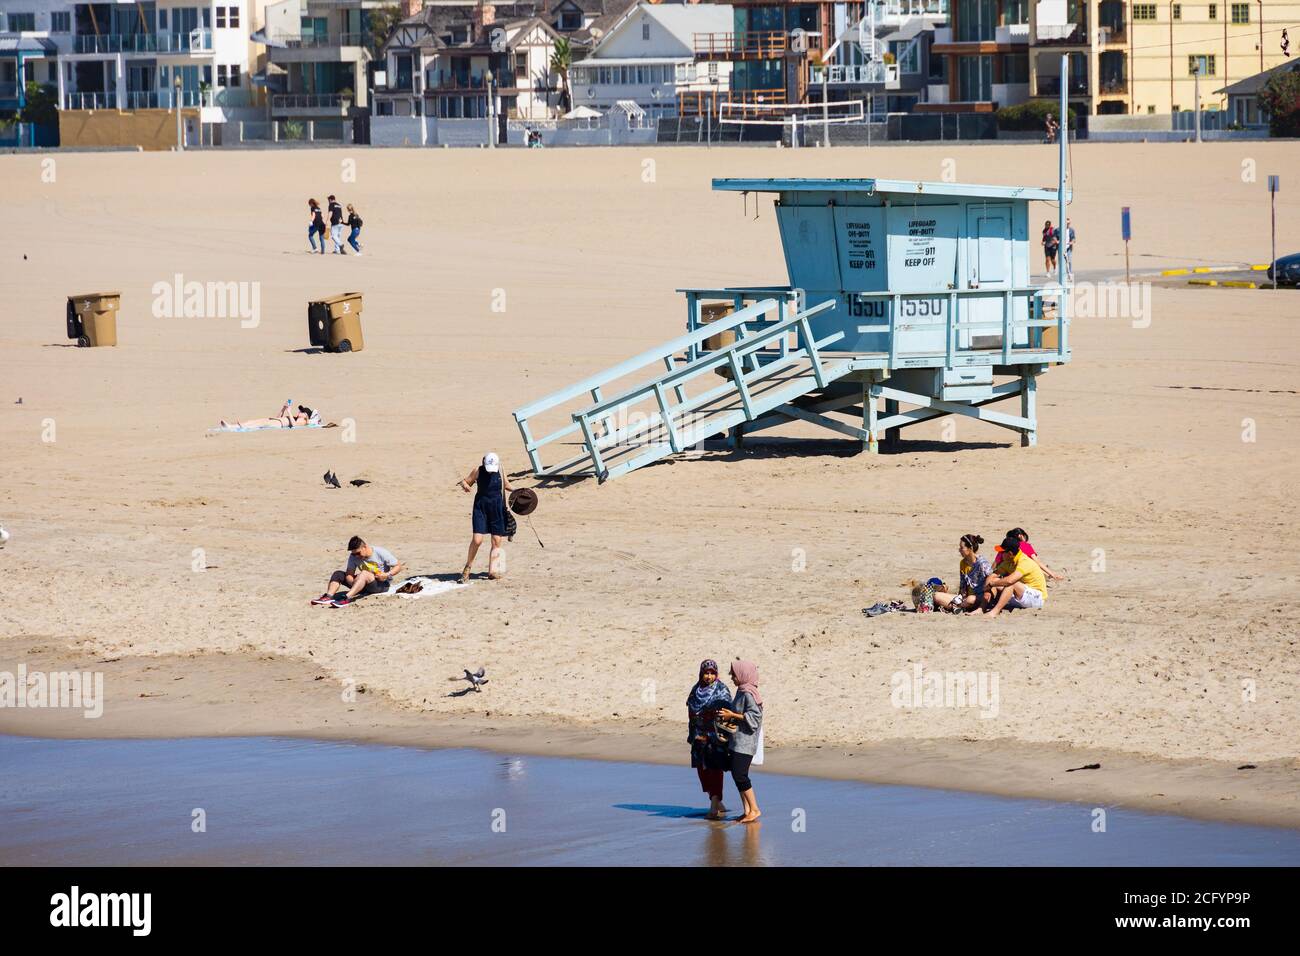 Touristes sur la plage, avec refuge de la protection de la vie, Santa Monica, Californie, États-Unis d'amérique. ÉTATS-UNIS. Octobre 2019 Banque D'Images